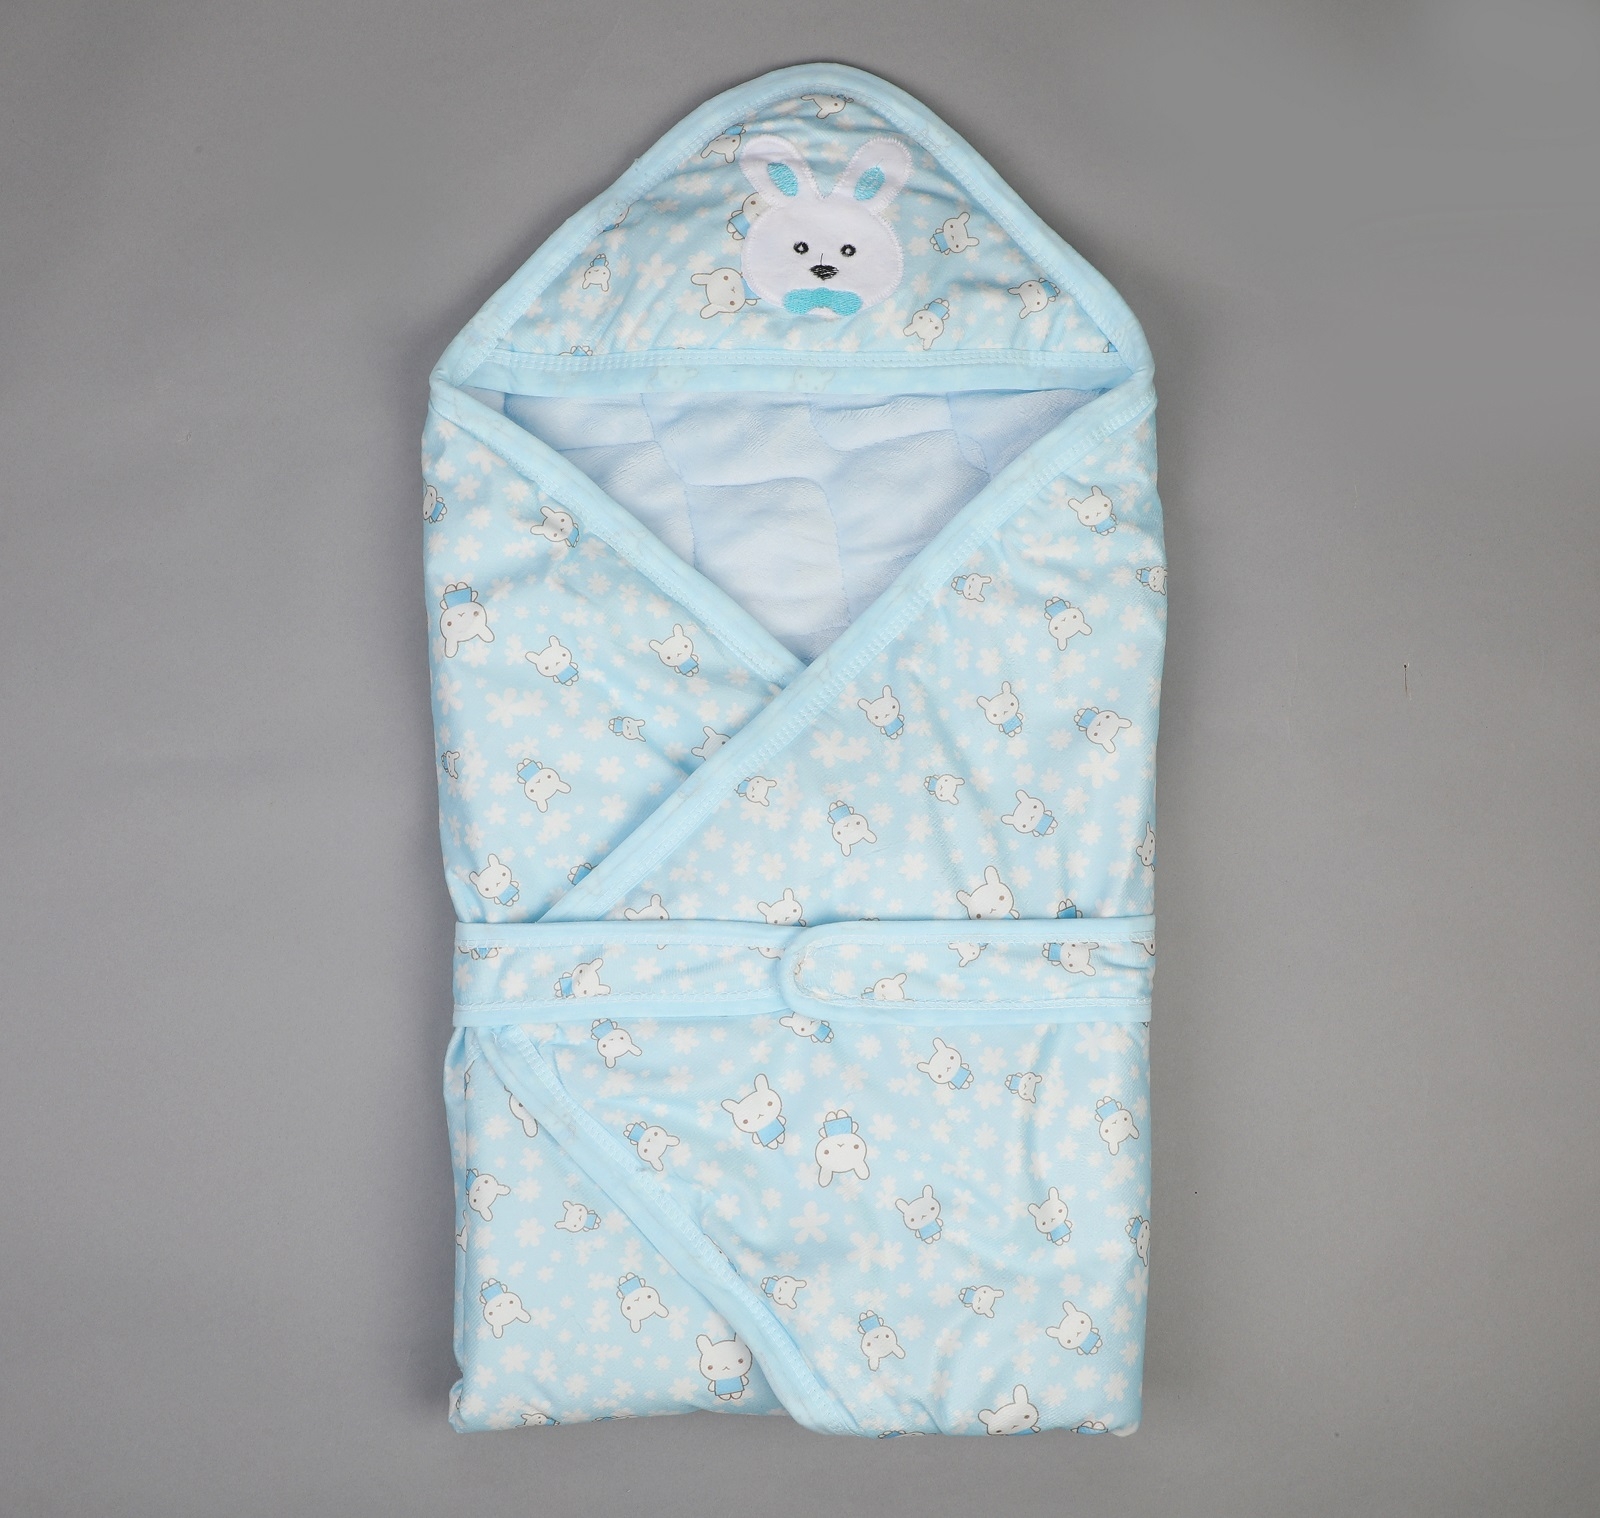 Kidbea | Kidbea 3-in1 Baby Sleeping Bag/Wrapper with Hood - Bunny